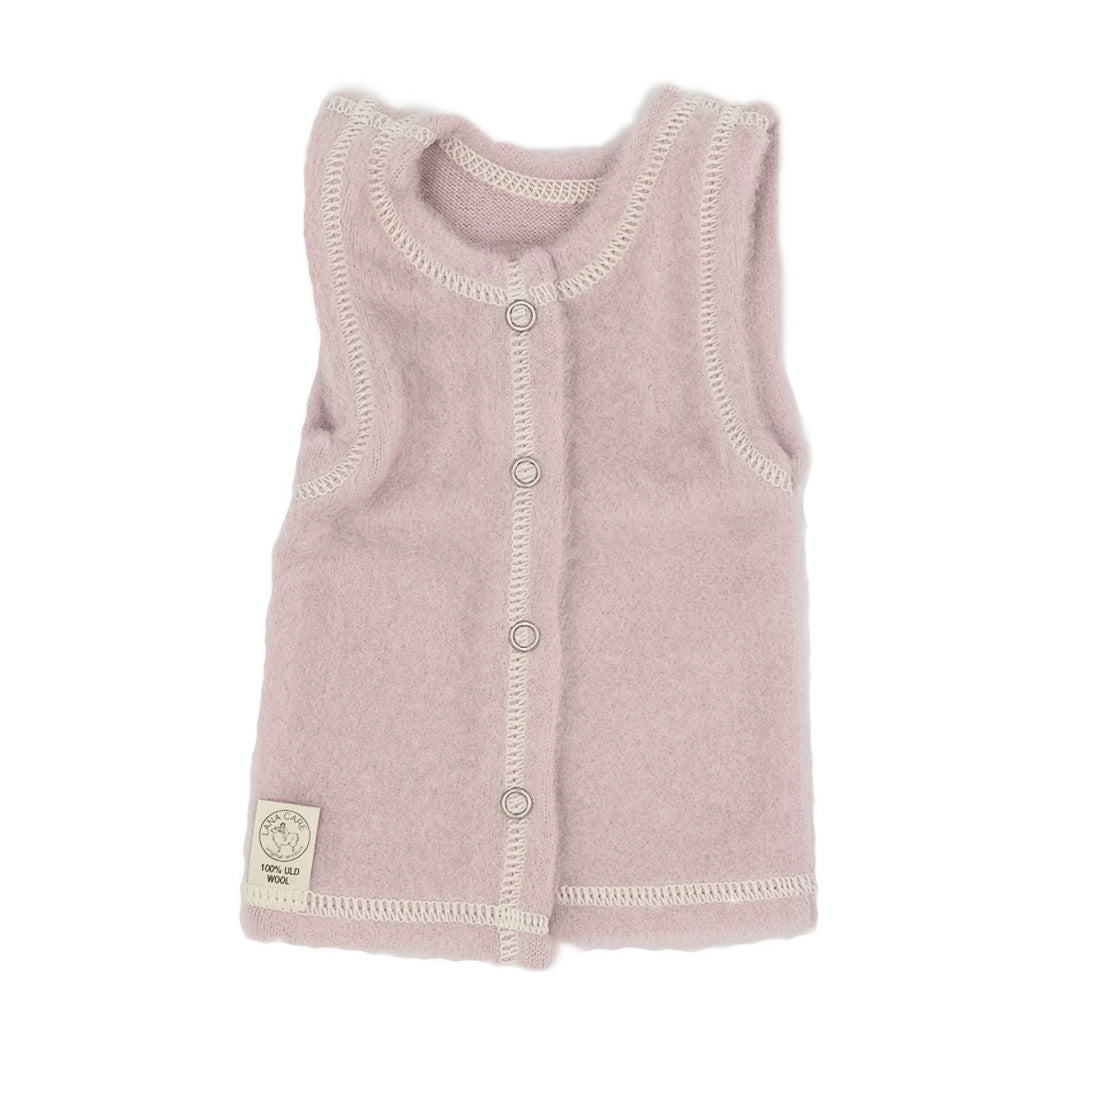 LANACare Baby/Toddler Vest in Organic Merino Wool - up to 9 mo